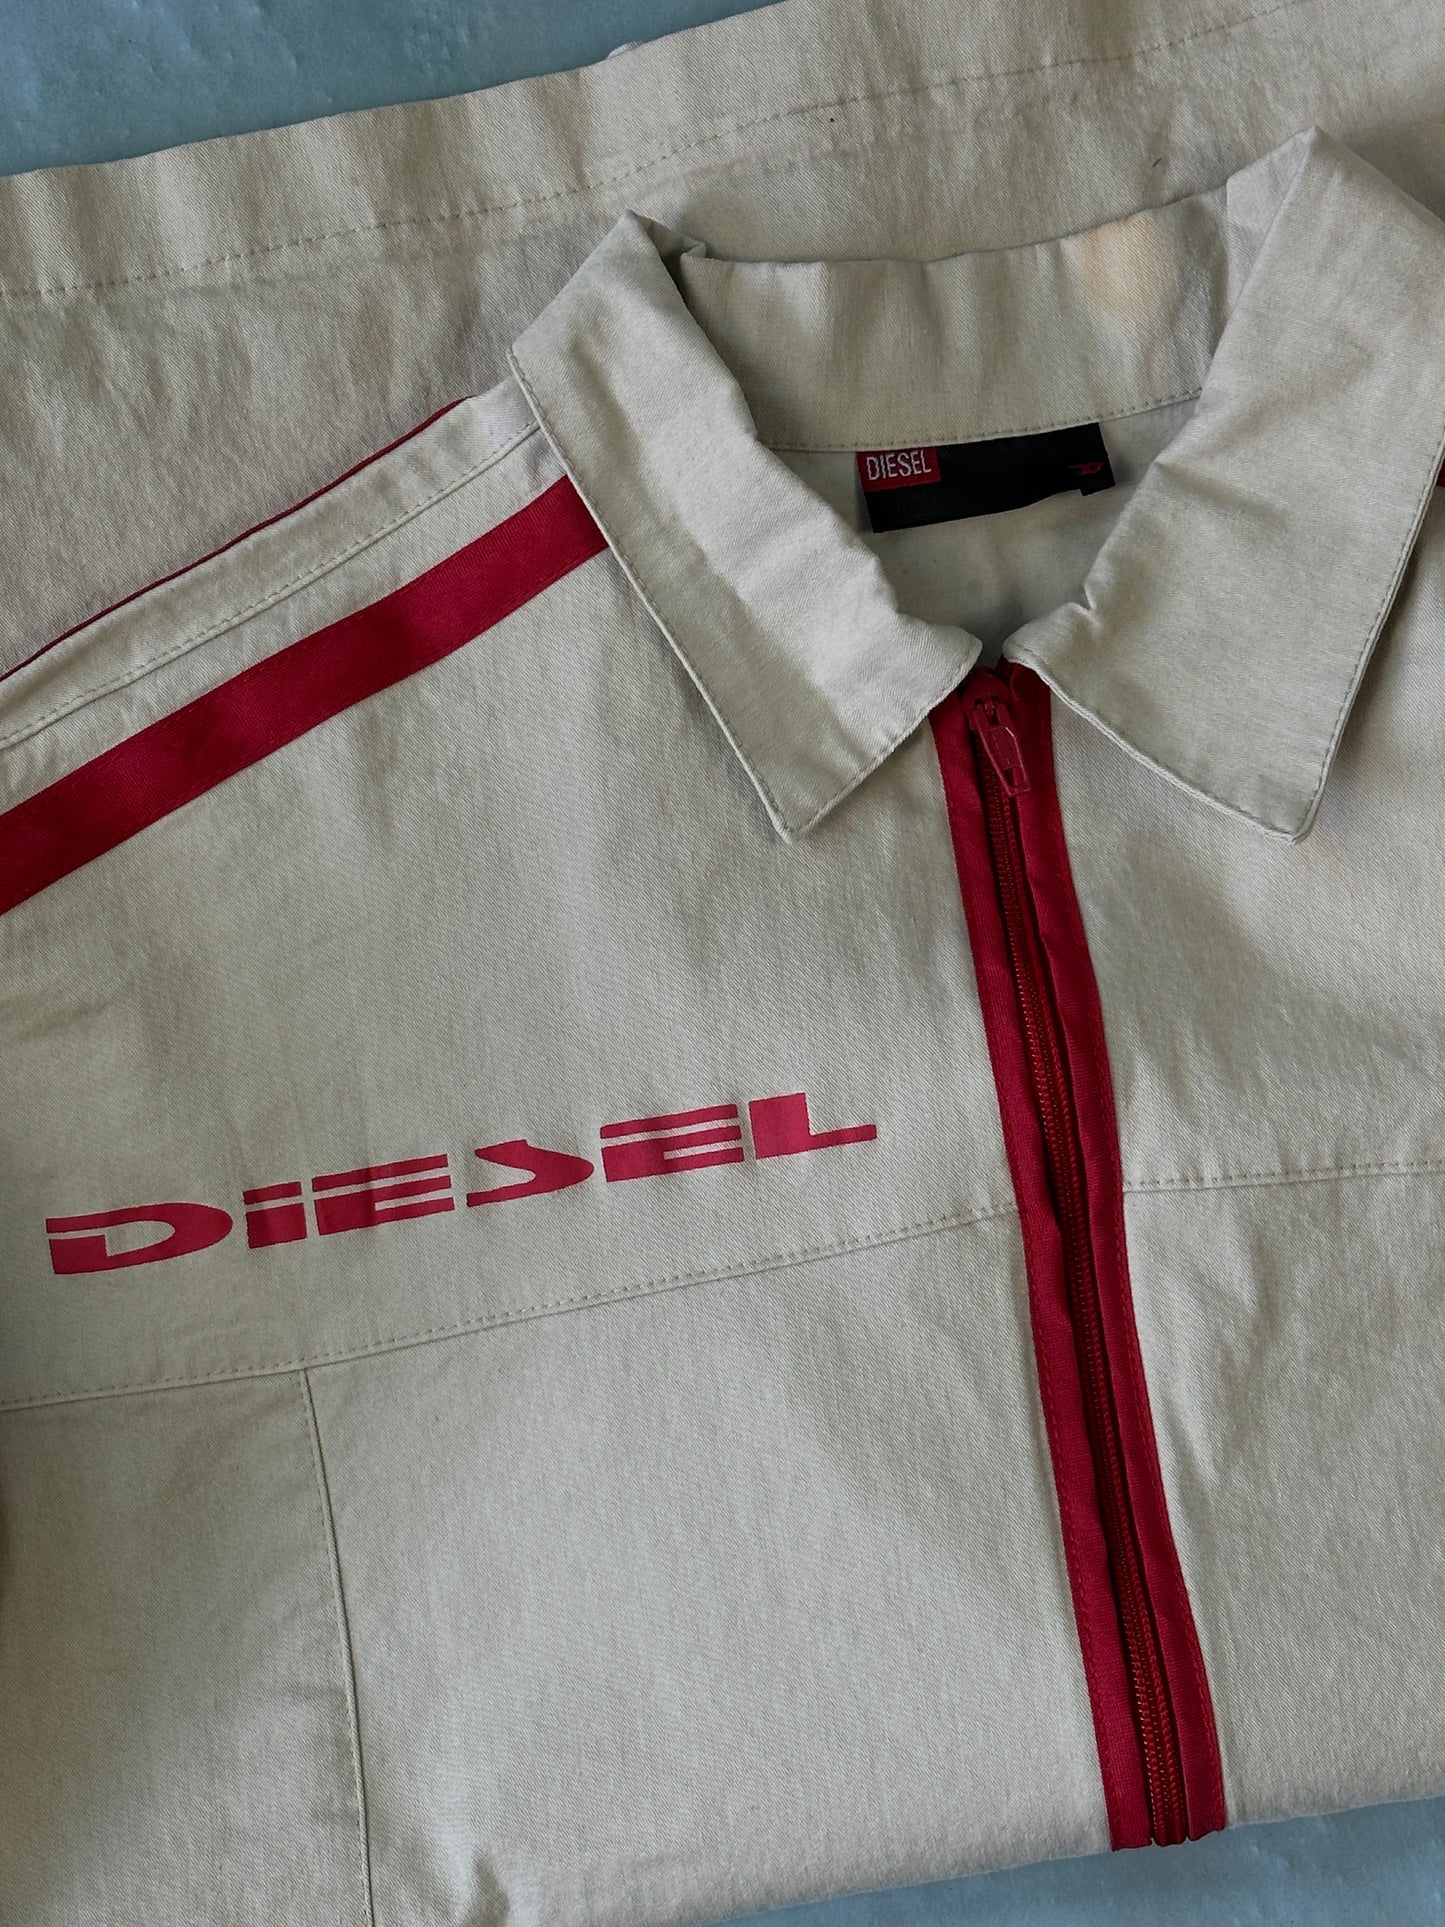 Zip Diesel Vintage Shirt - M